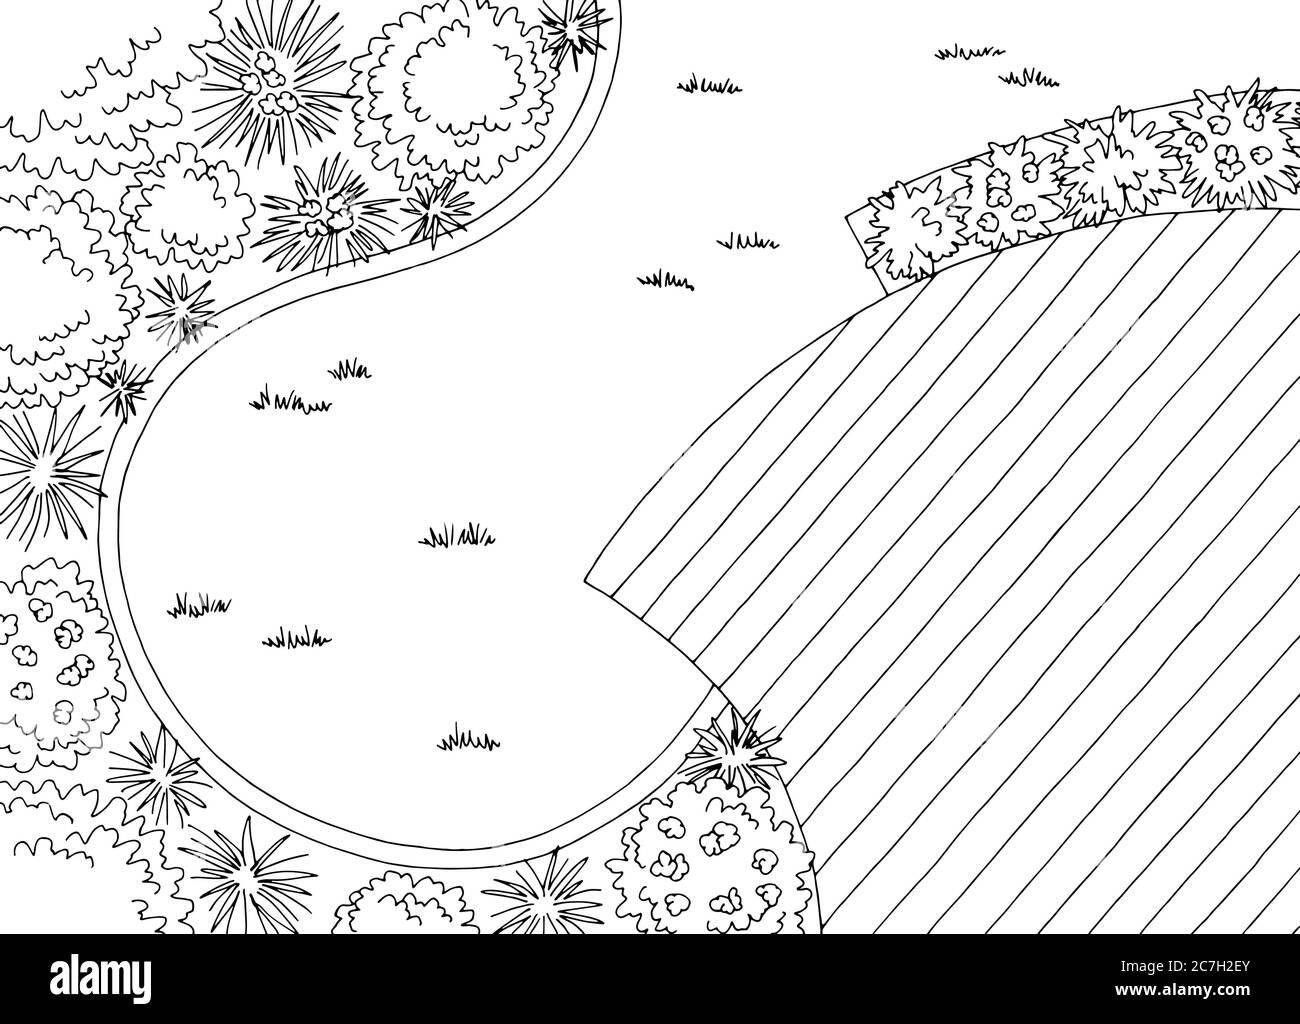 Jardin paysage architecte design arrière plan graphique noir blanc esquisse vue aérienne illustration vecteur Illustration de Vecteur